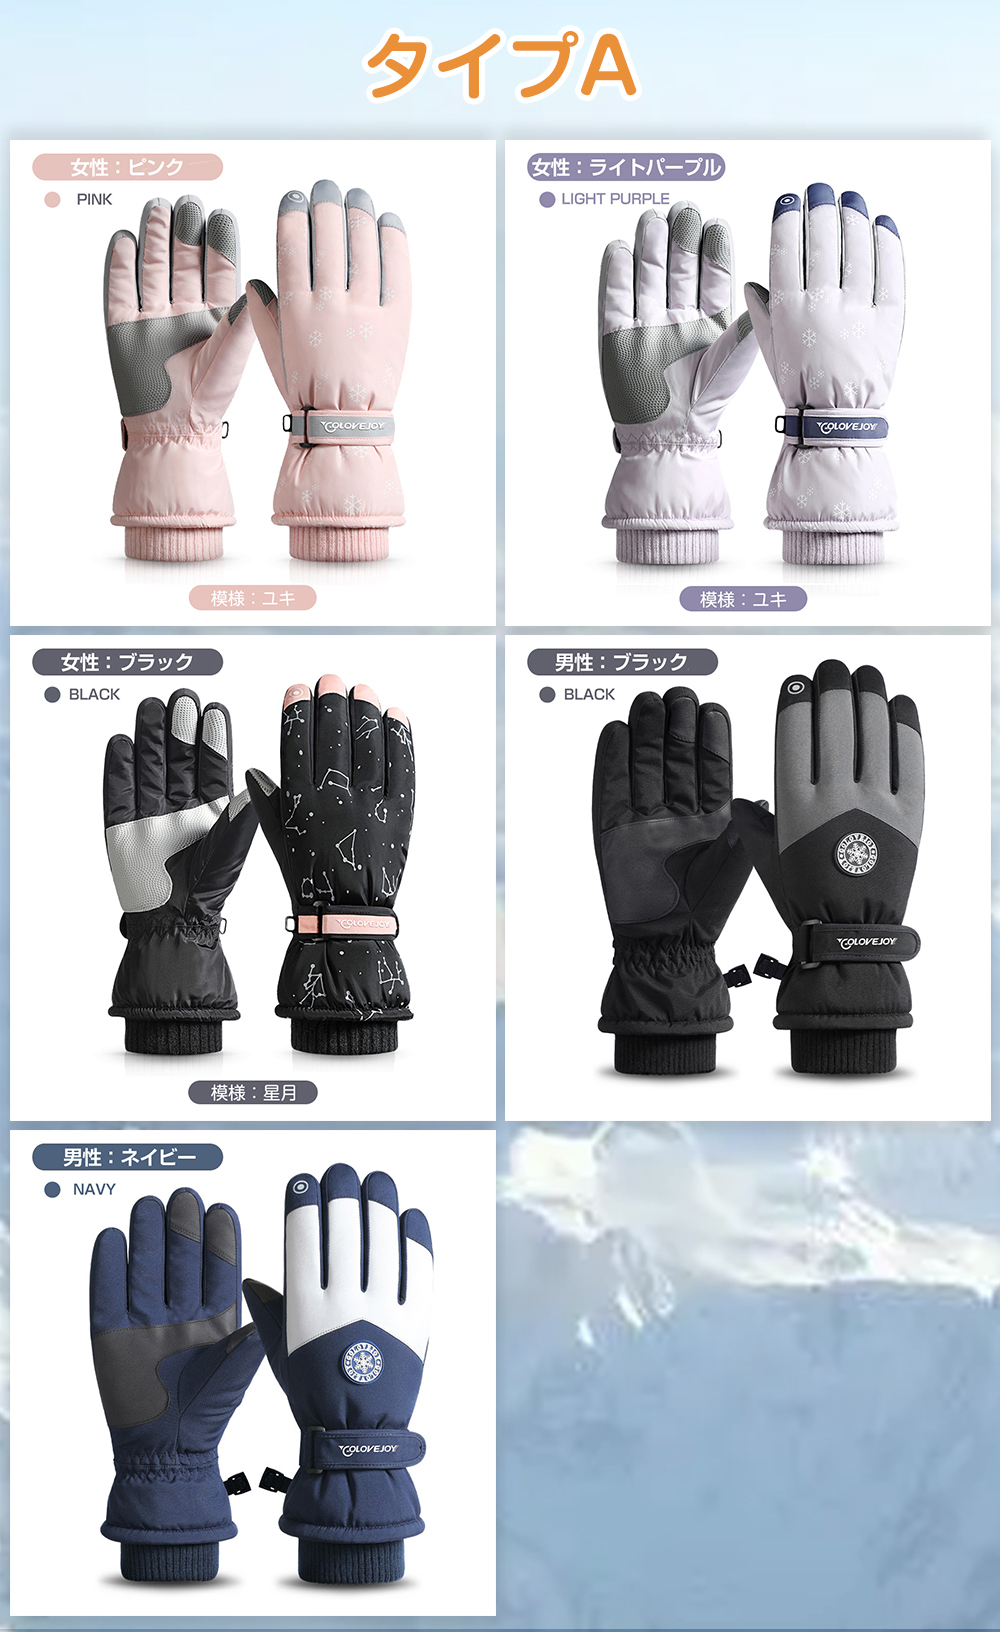 スキーグローブ 手袋 レディース メンズ グローブ アウトドア バイク スノー スキー スノーボード スノボ 完全防水 裏起毛 暖かい おしゃれ  五本指 :ski-glove01:HONEST-ONLINE 通販 